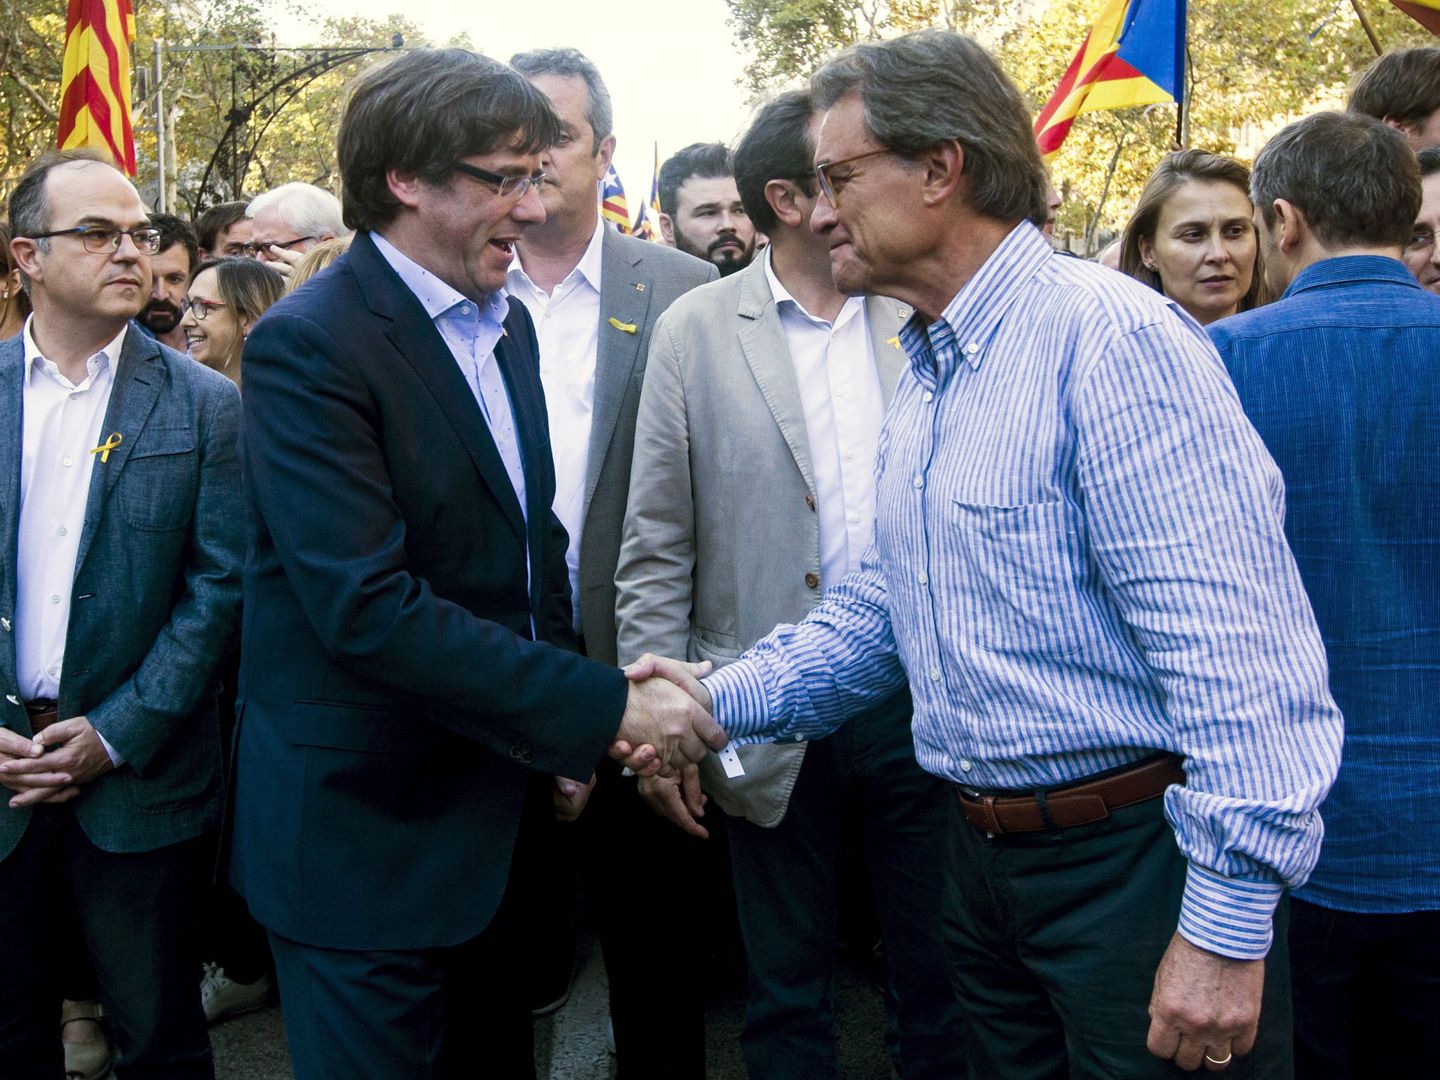 El presidente de la Generalitat, Carles Puigdemont, saluda a Artur Mas en la marcha en contra del 155. (EFE)